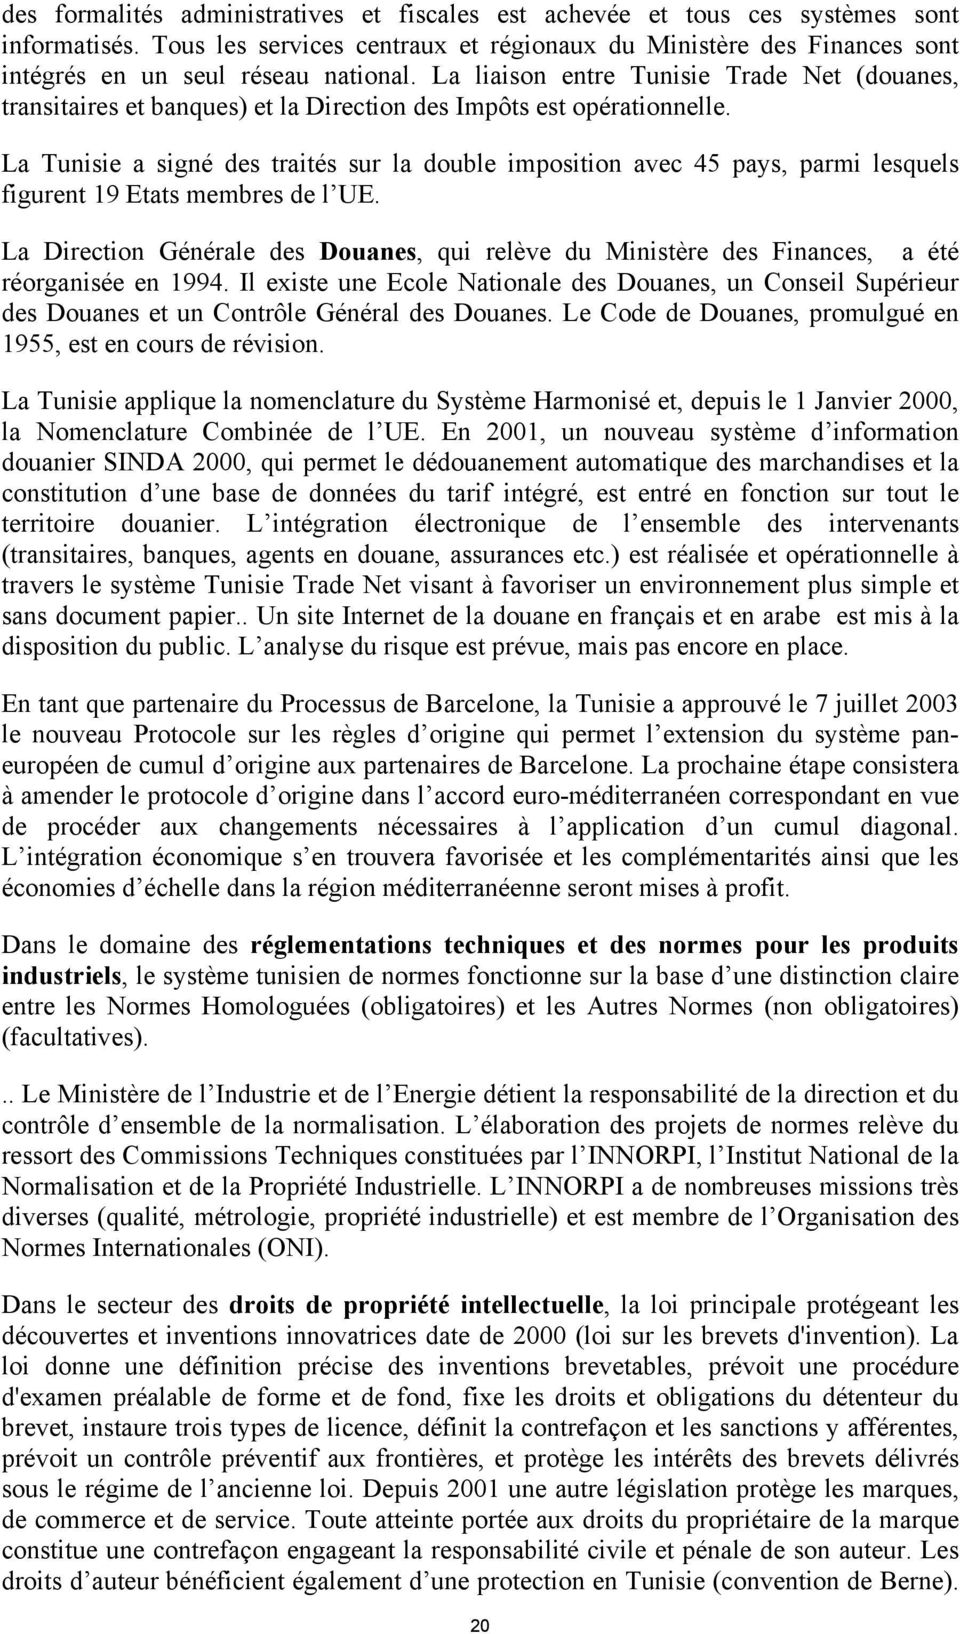 La liaison entre Tunisie Trade Net (douanes, transitaires et banques) et la Direction des Impôts est opérationnelle.